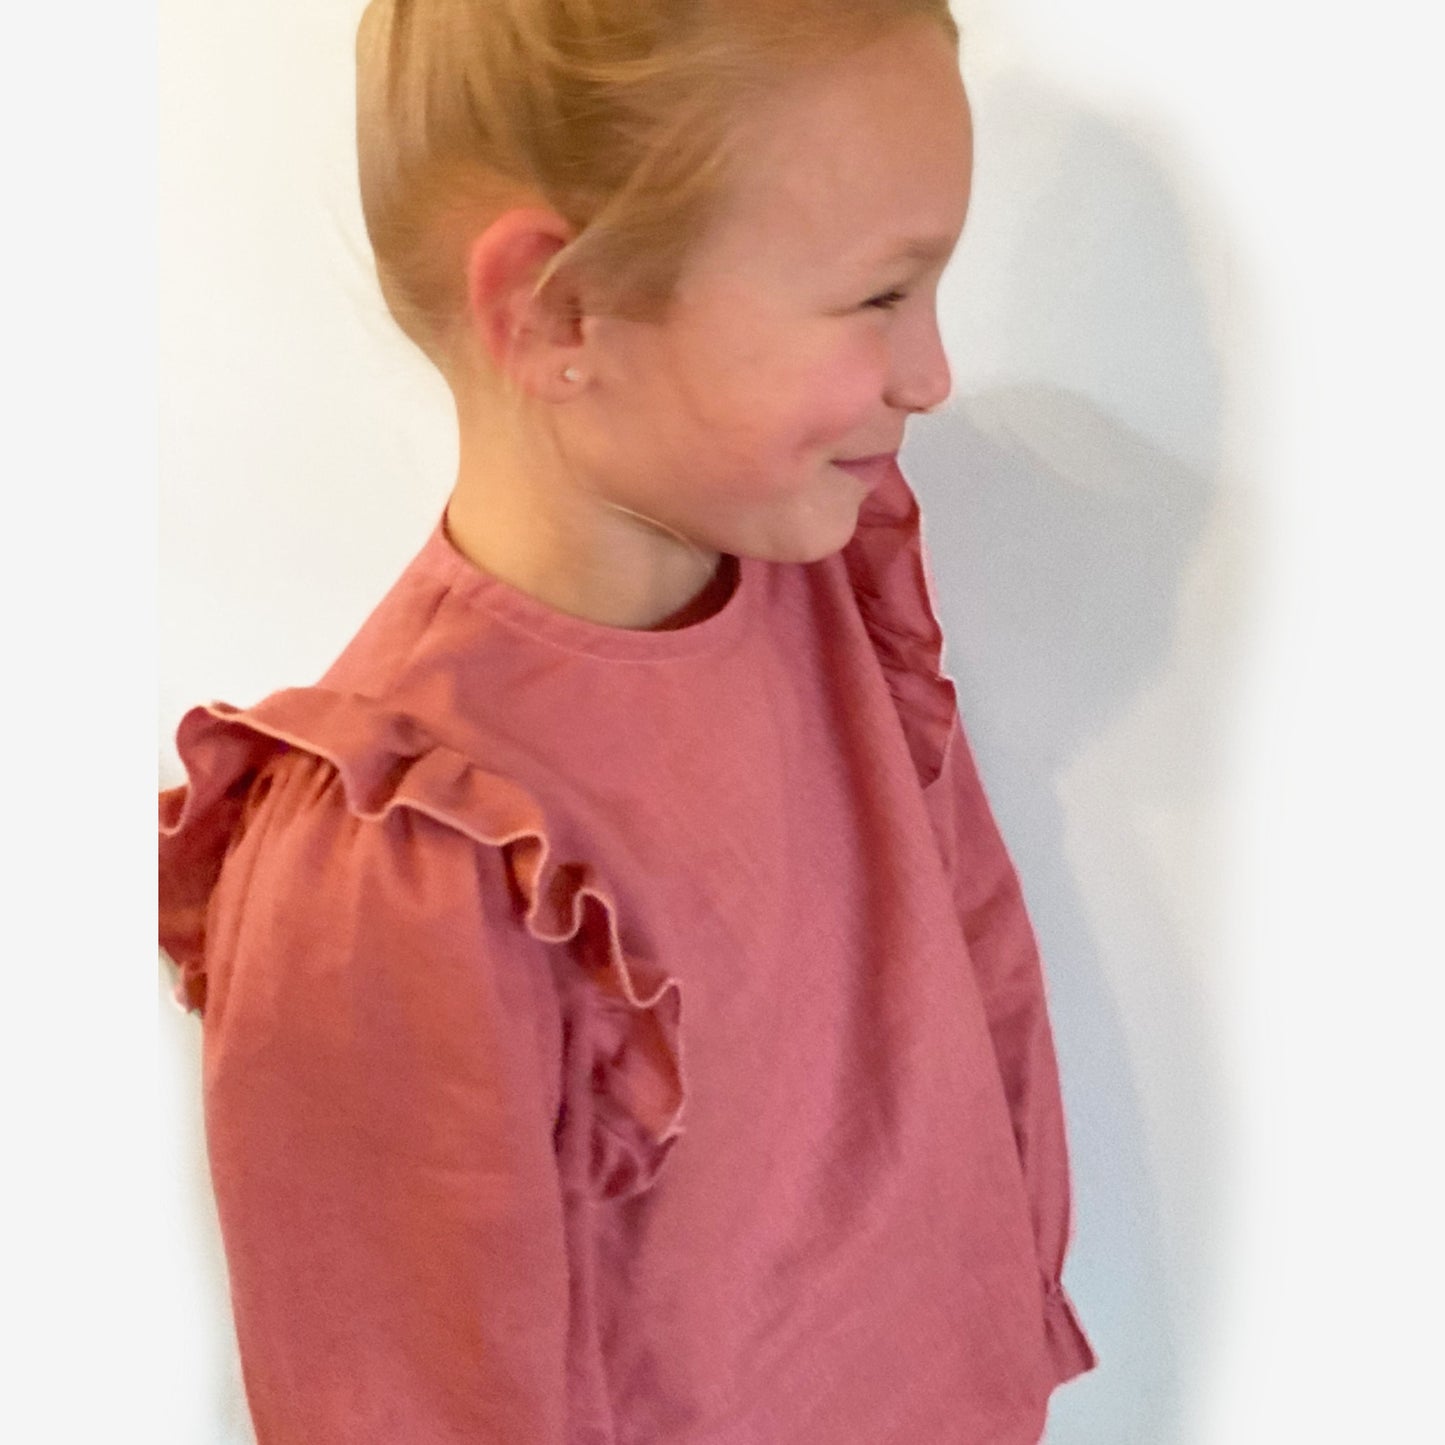 Voorkant met ruffle van blouse Peach, onderdeel van Set Peach handgemaakte leuke duurzame meisjeskleding webshop Cuteez